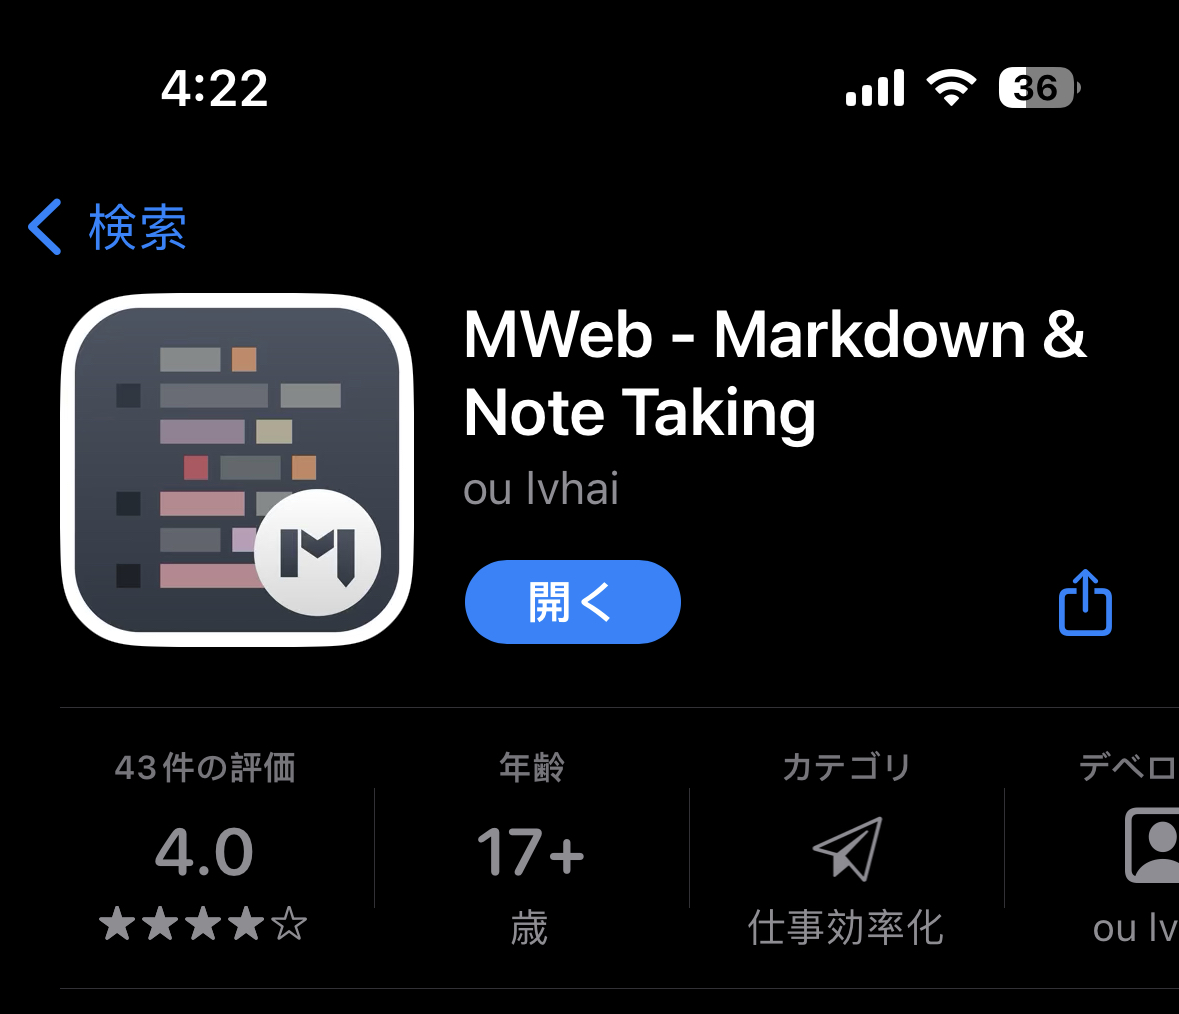 手机端好用的Markdown | IOS 安装Markdown编辑器MWeb并配置图床(Chevereto)